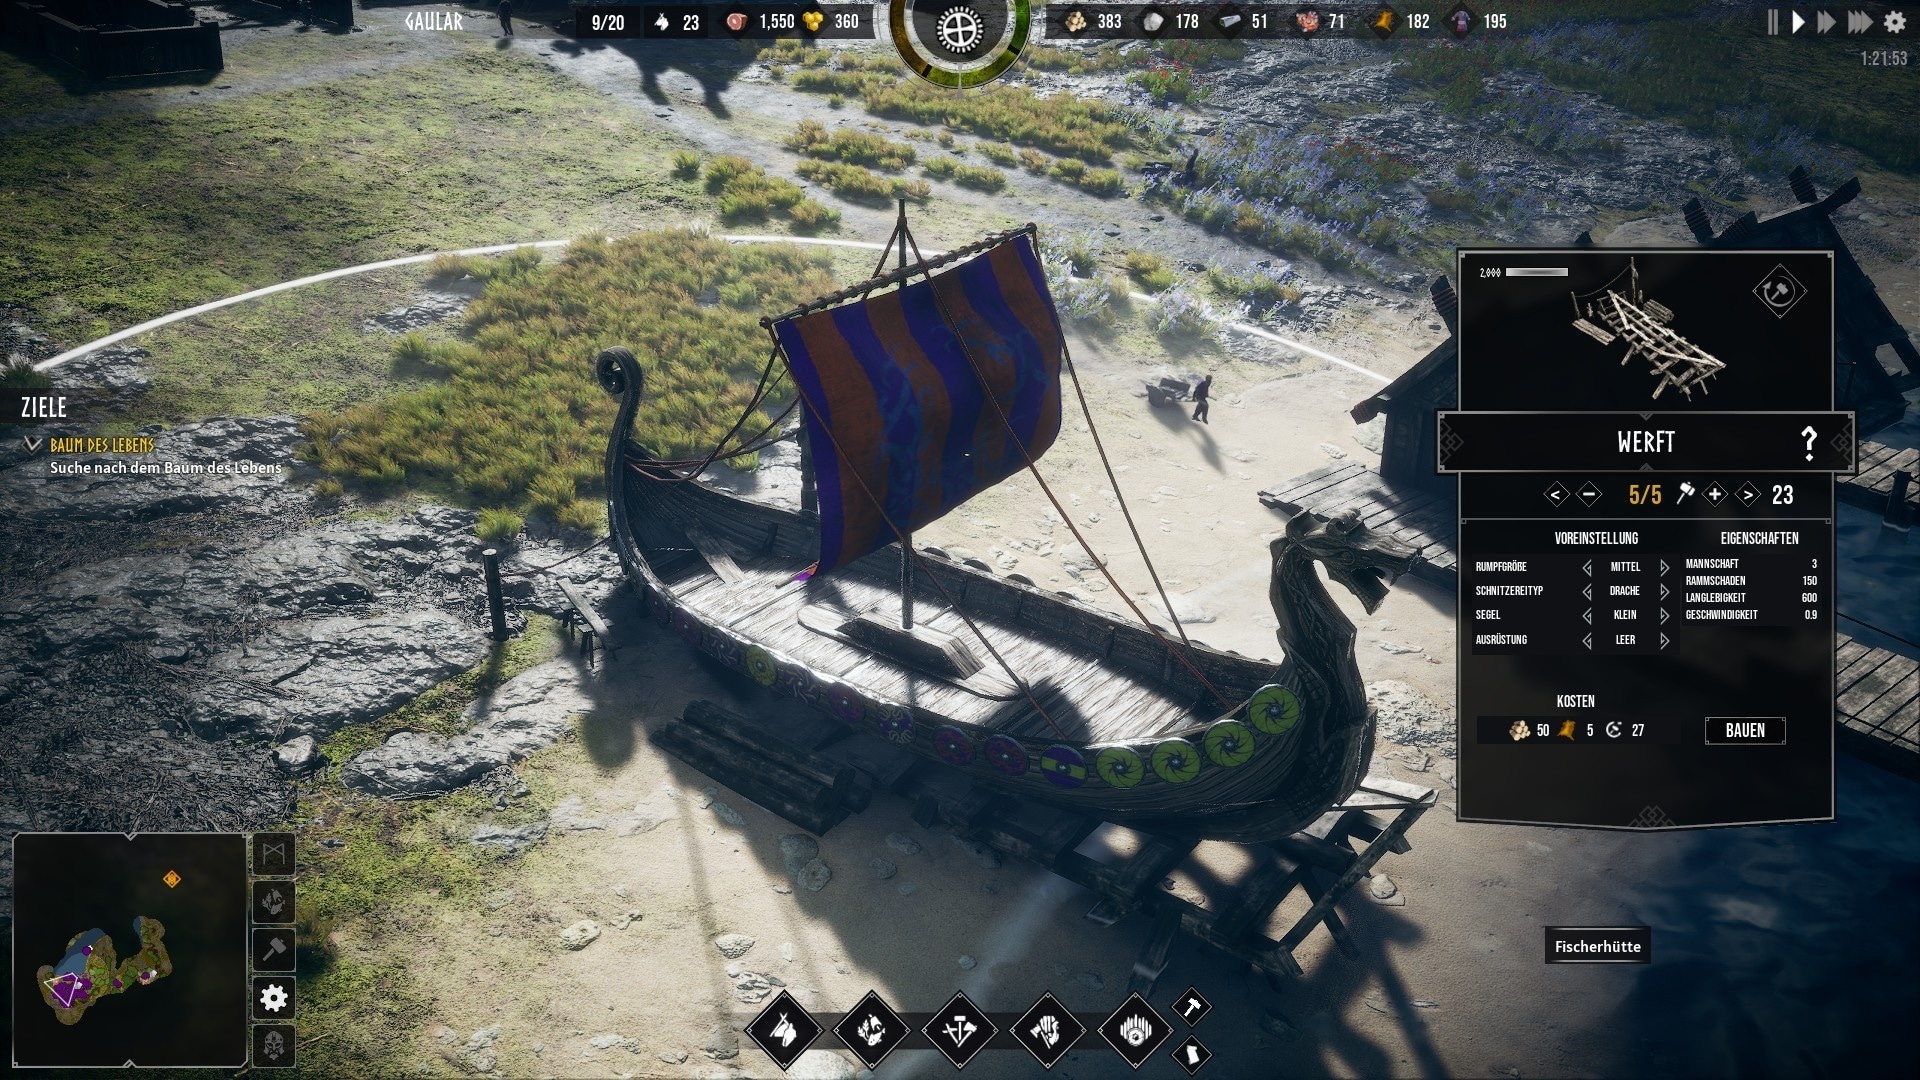 (Pokud chceš být opravdovým Vikingem, můžeš také spustit dlouhý člun. Můžeme to dokonce přizpůsobit)